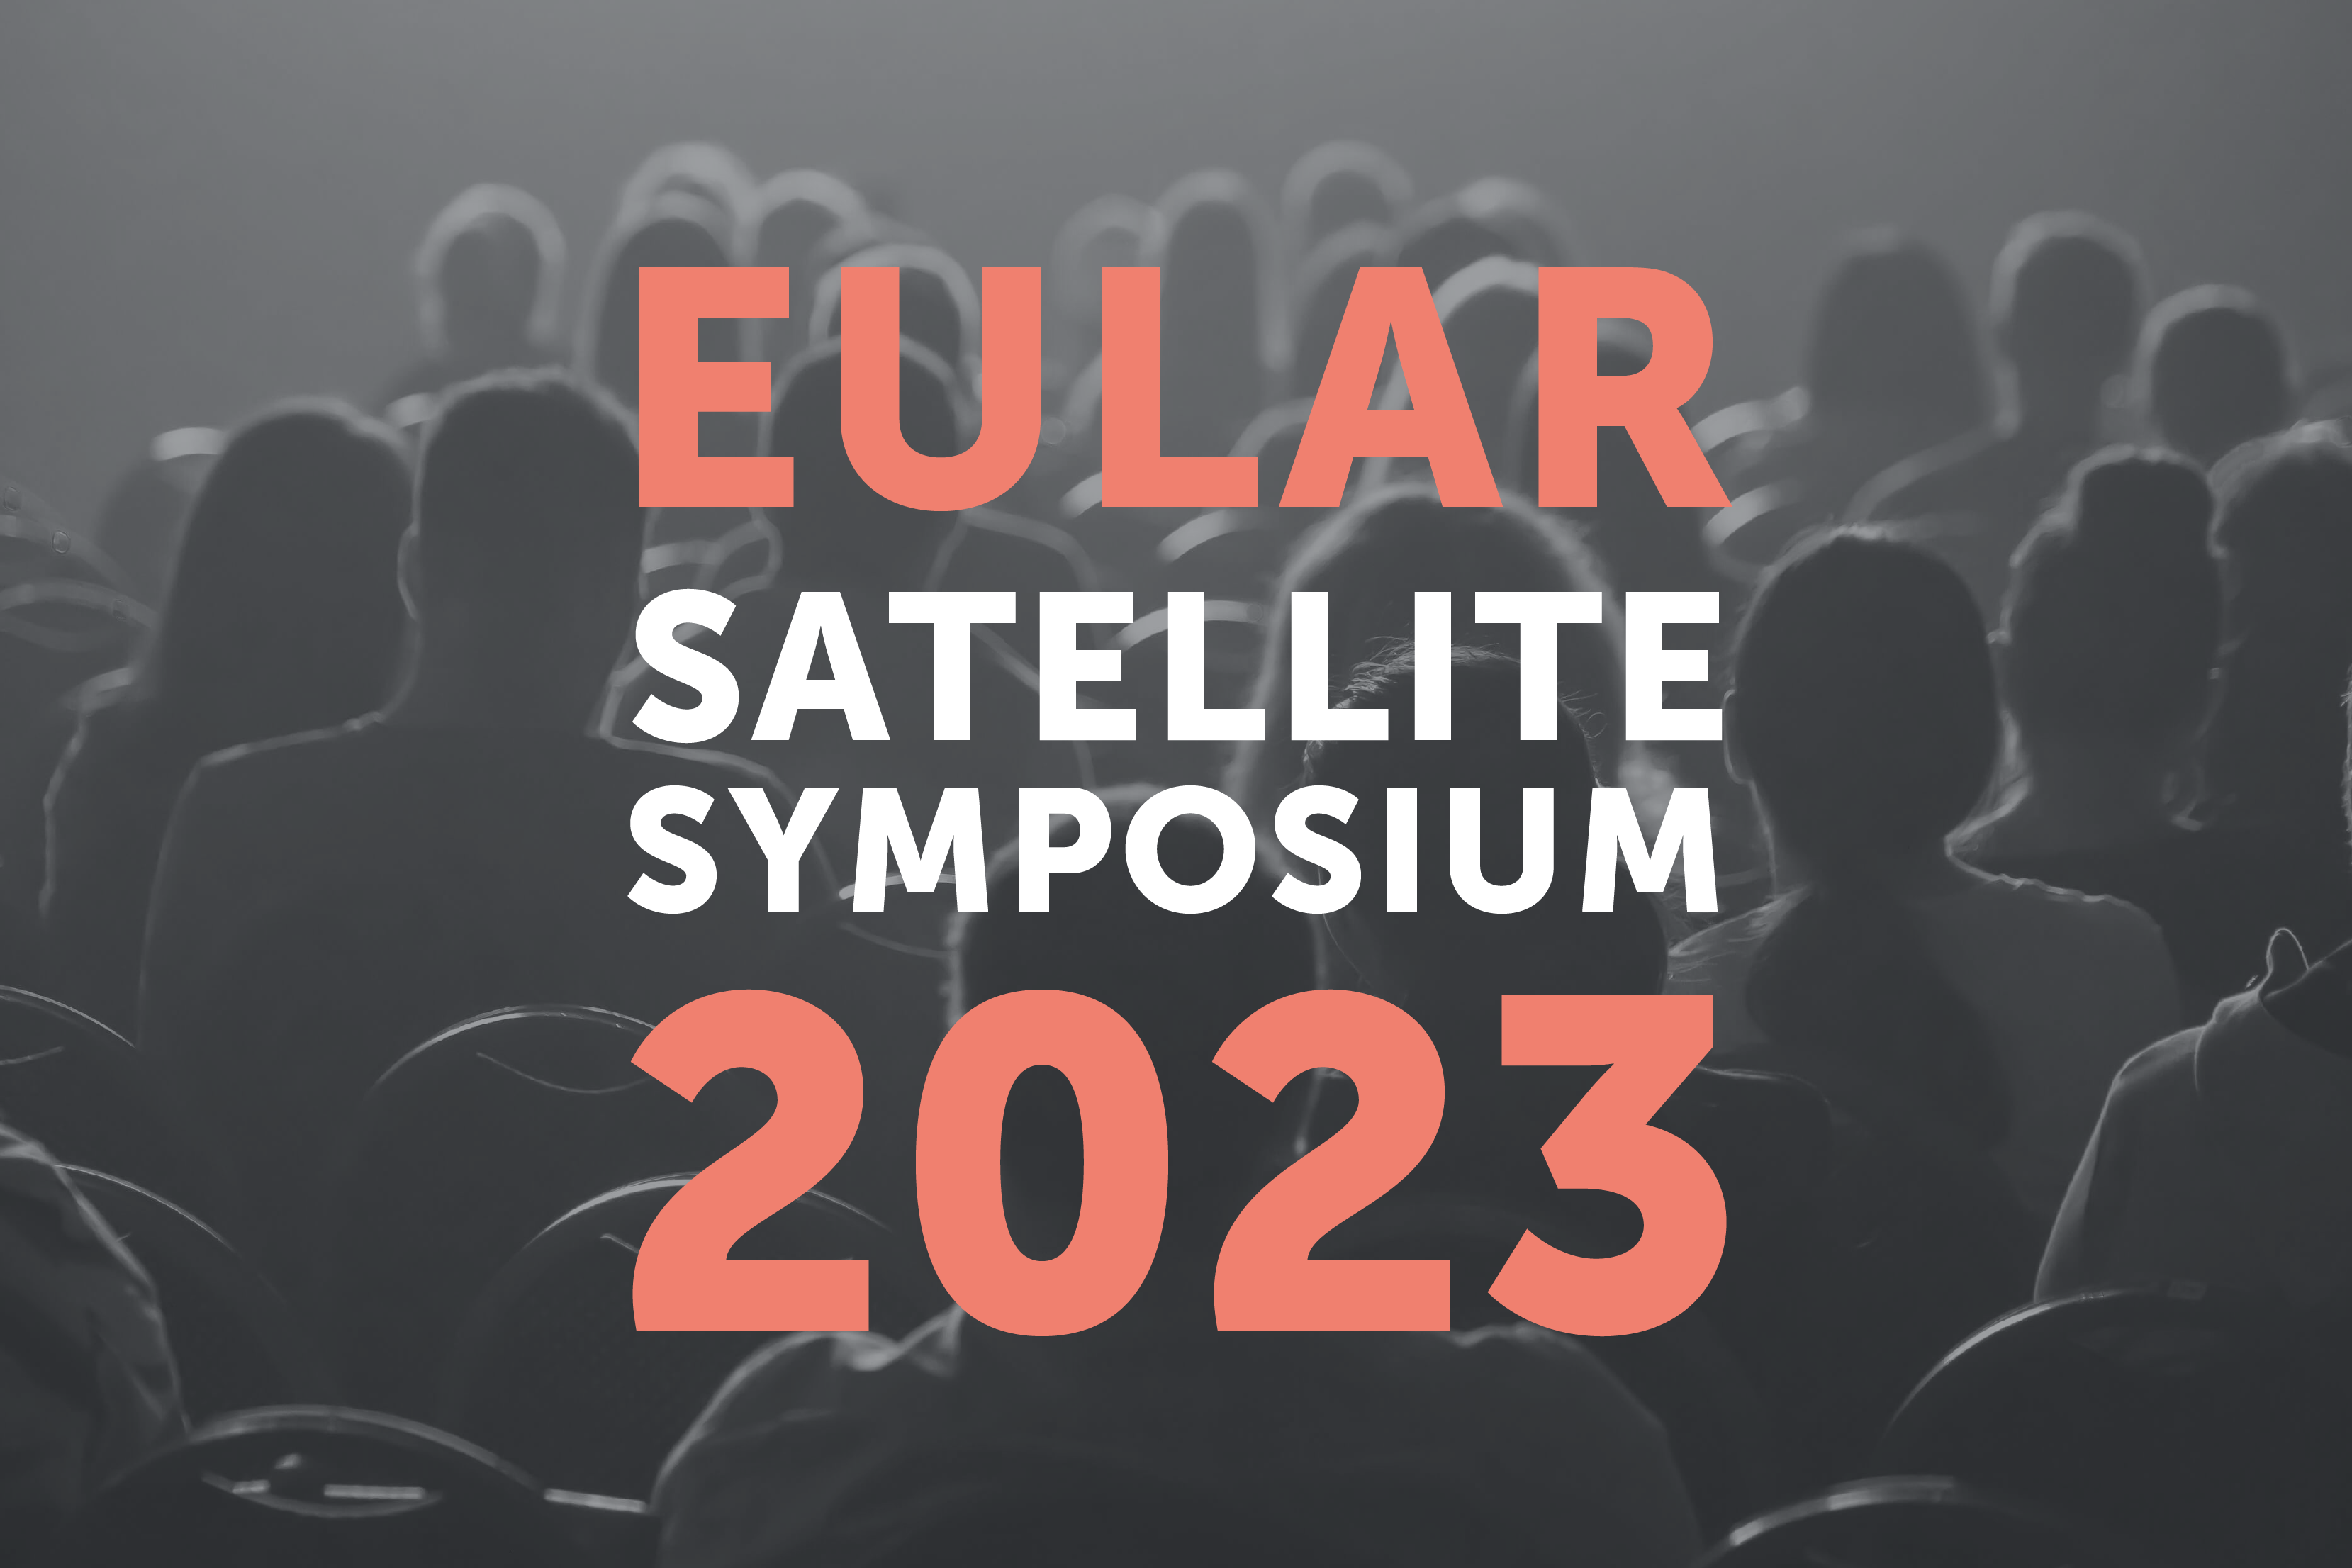 EULAR Satellite Symposium 2023